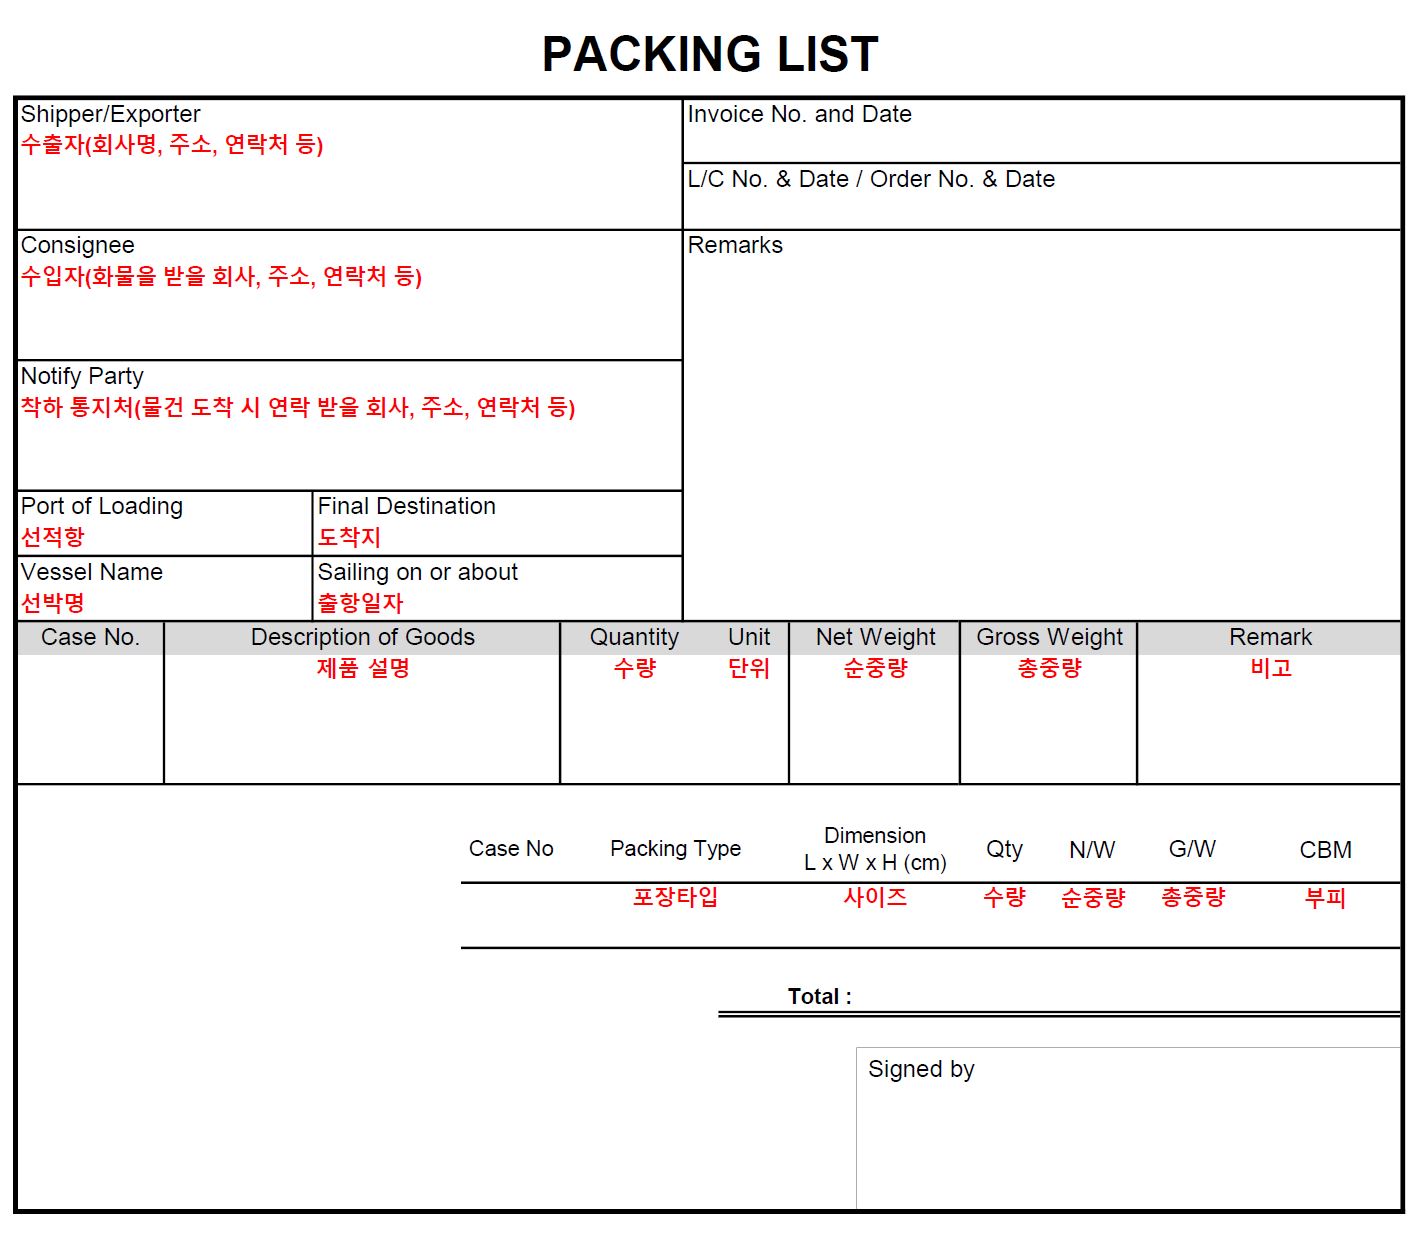 패킹리스트 작성법과 양식 (Packing List 샘플 파일 첨부)